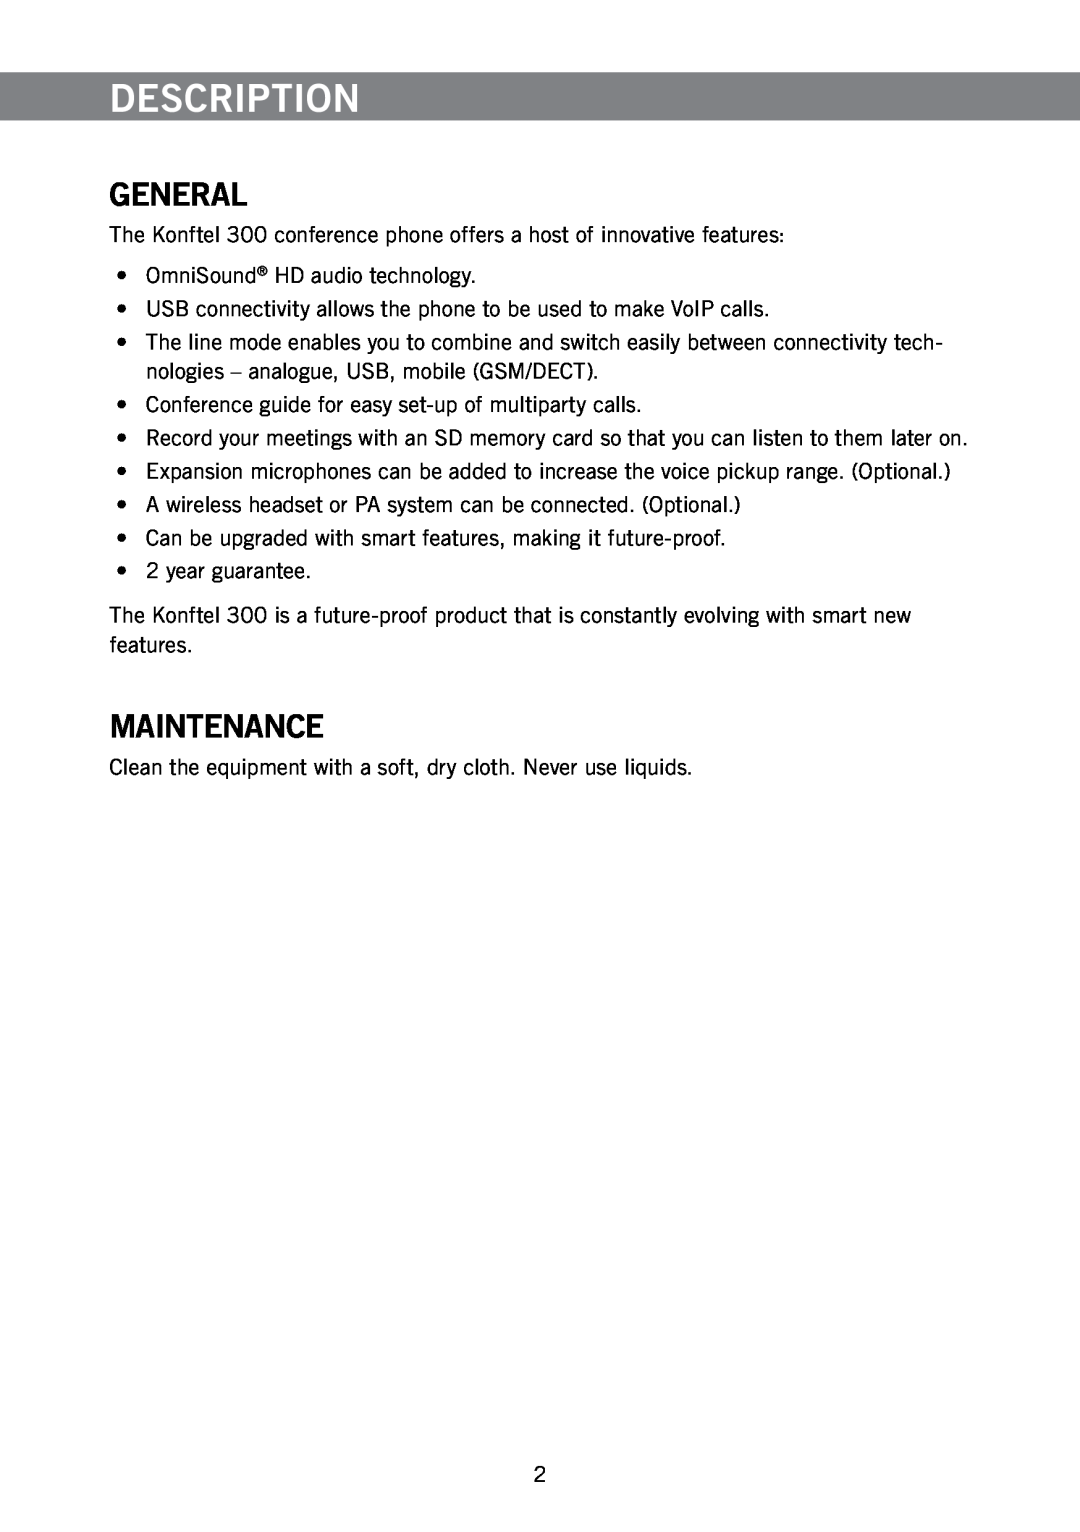 Konftel 300 manual Description, General, Maintenance 